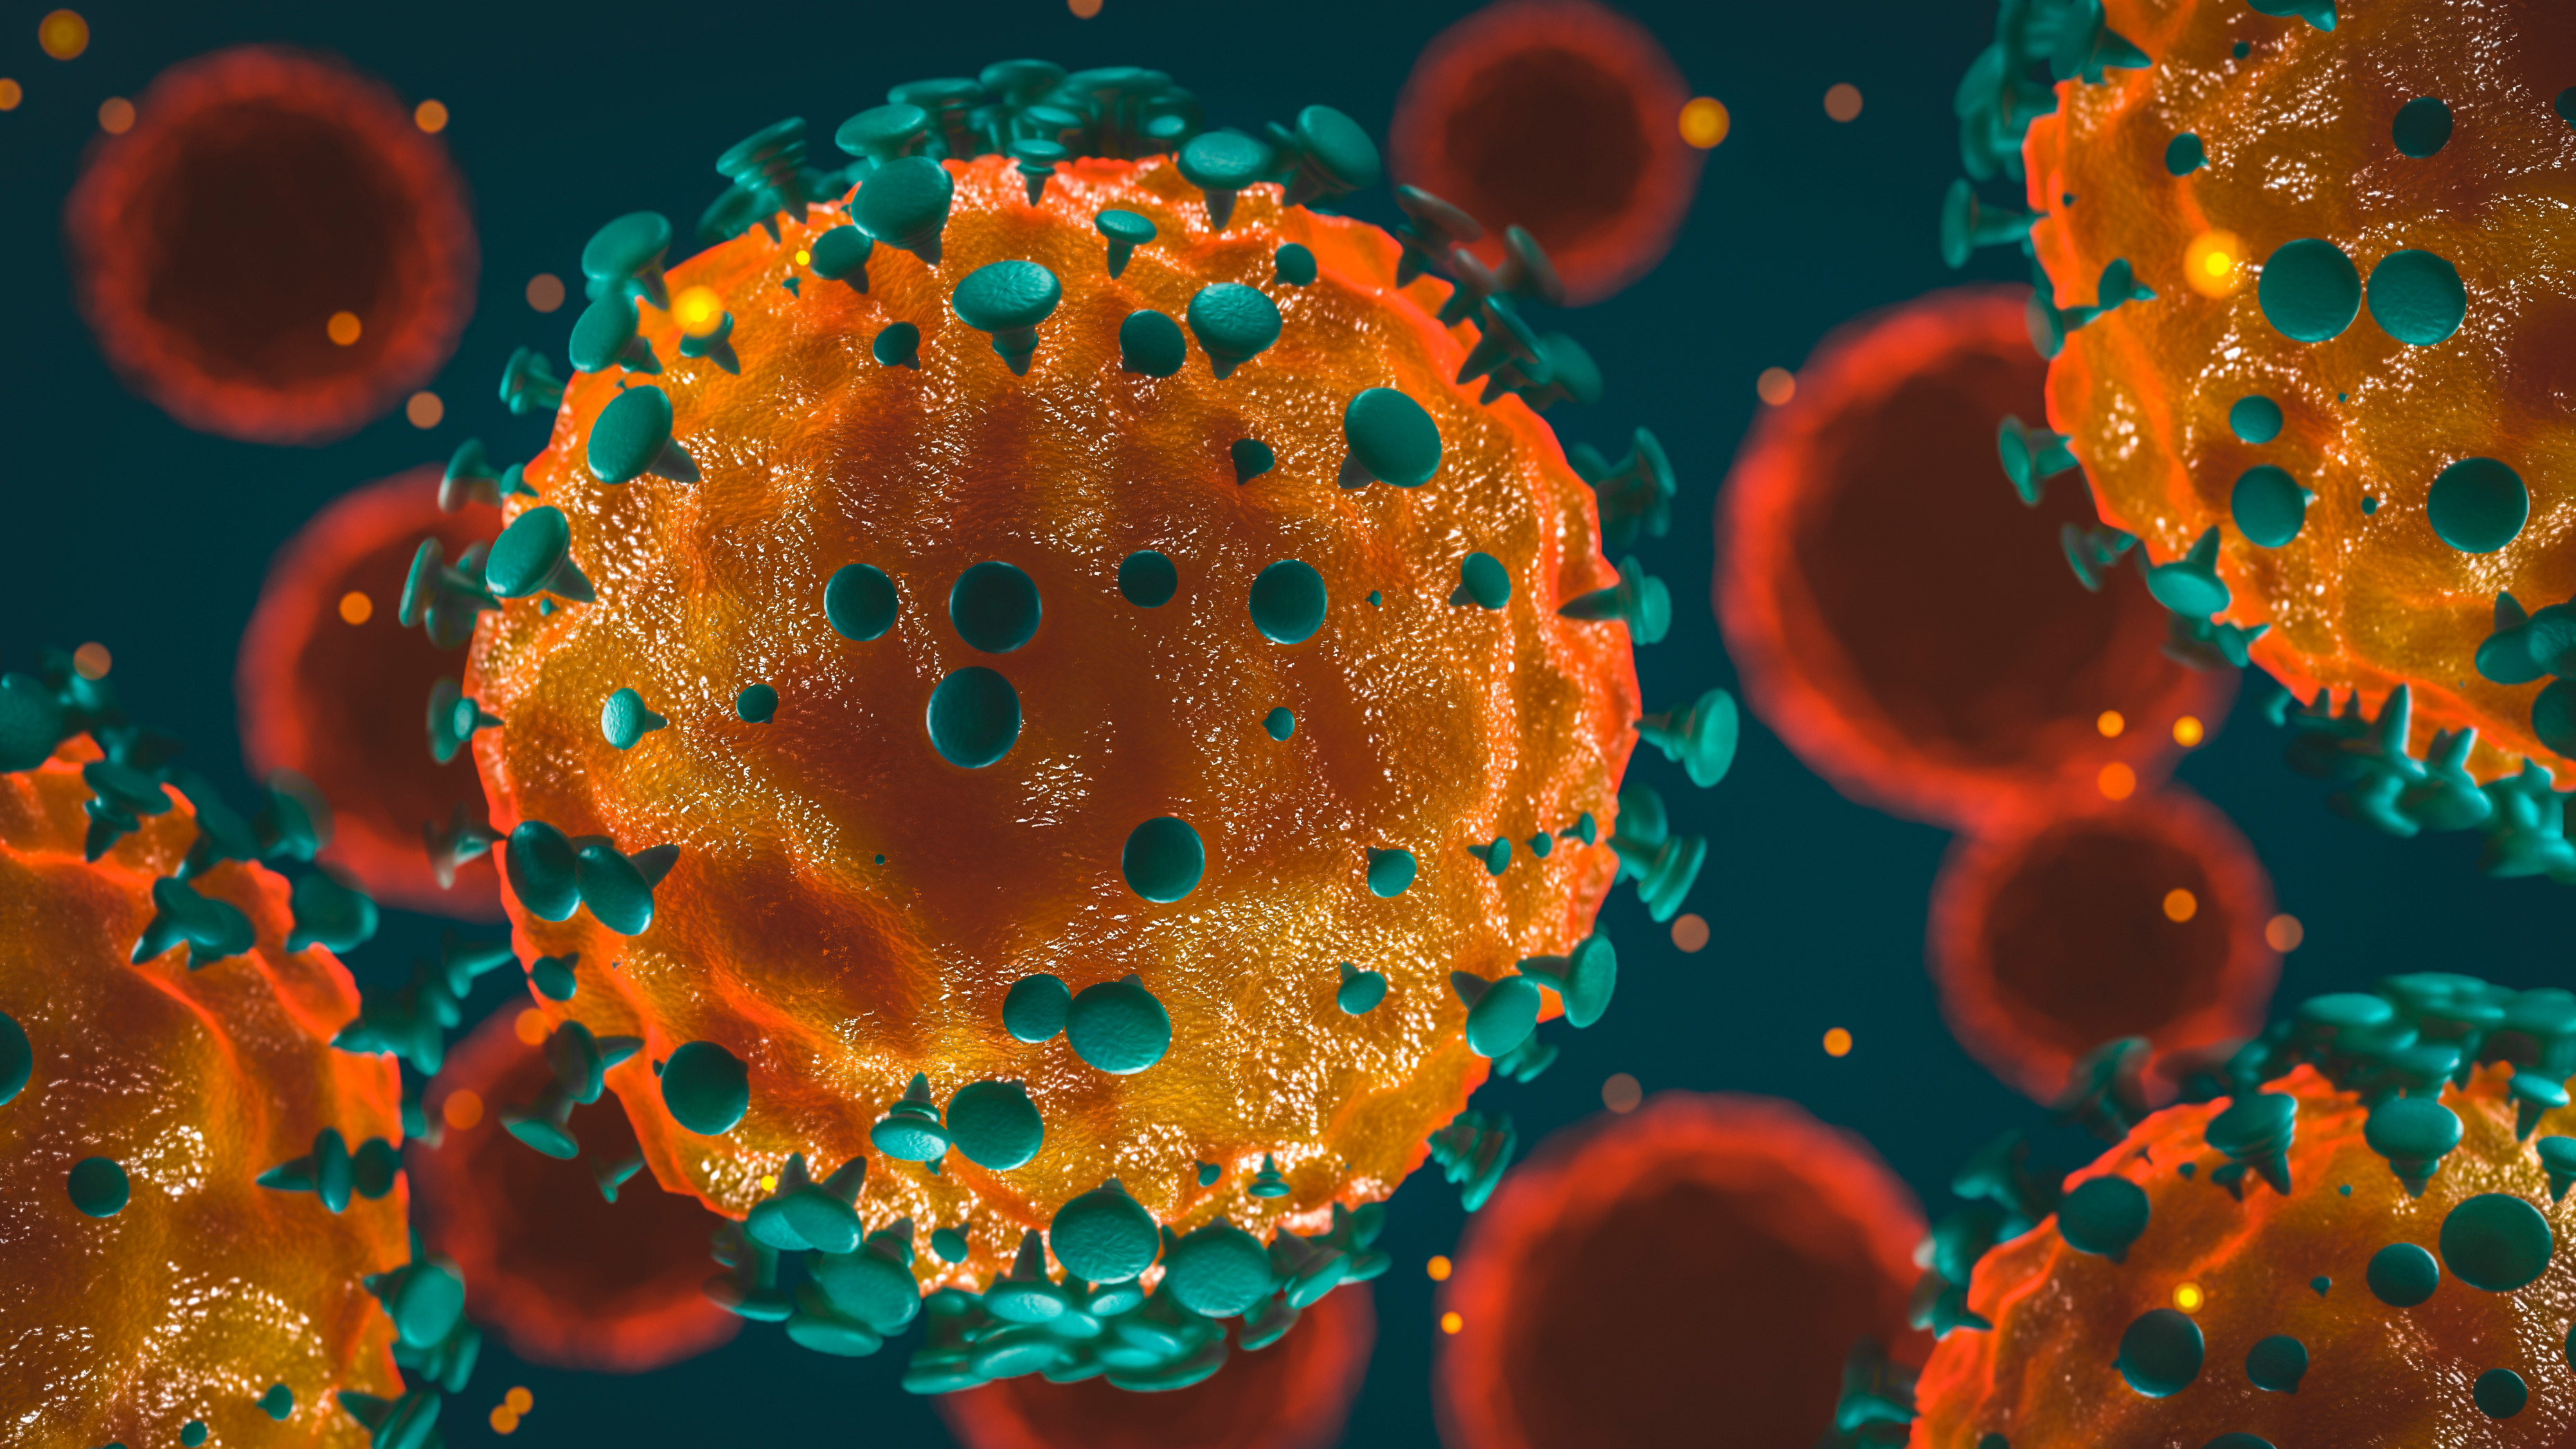 UChicago chemists race to decode RNA of new coronavirus